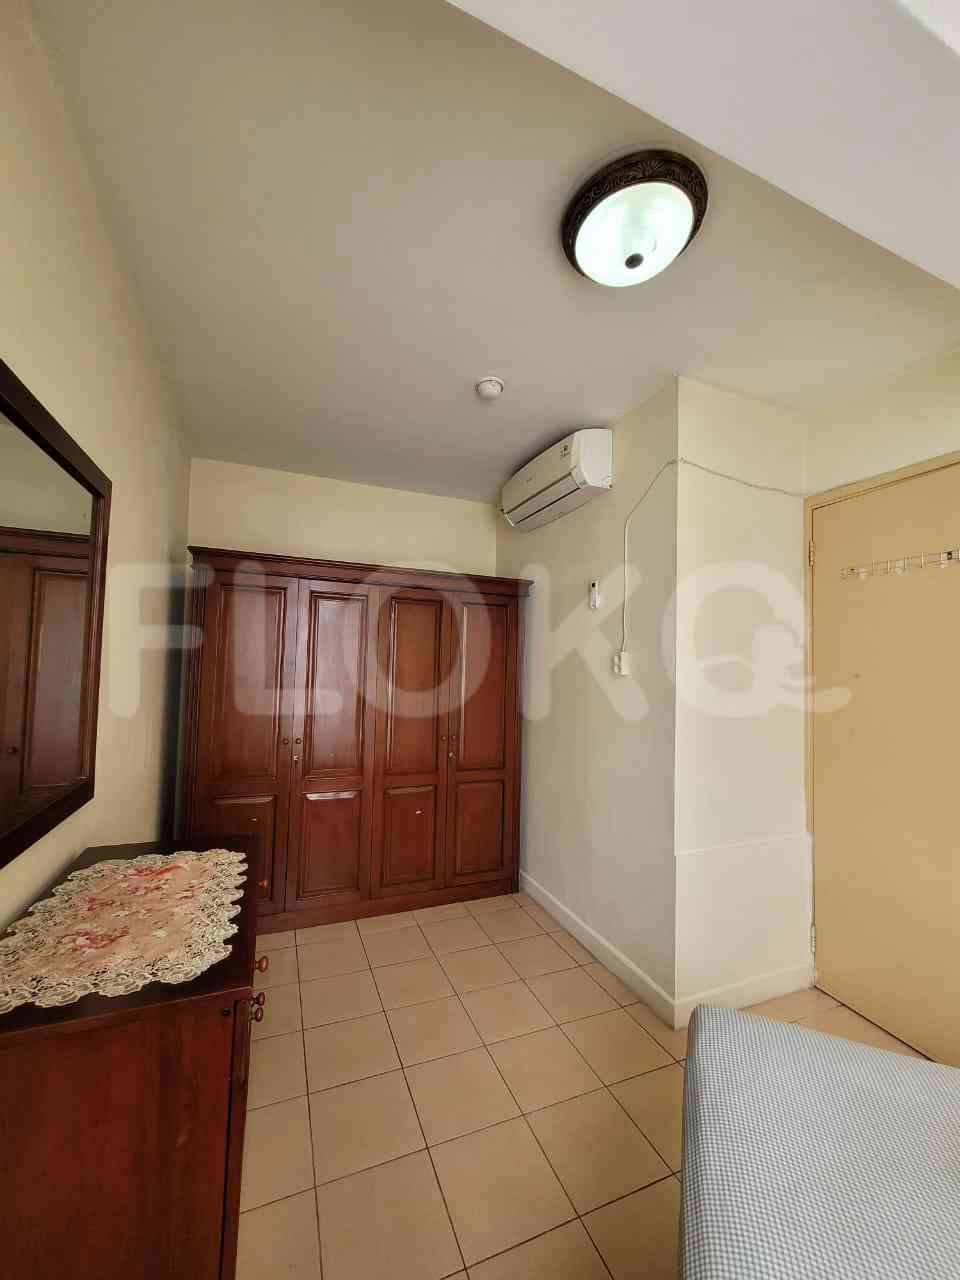 2 Bedroom on 23rd Floor for Rent in Taman Rasuna Apartment - fku9de 3